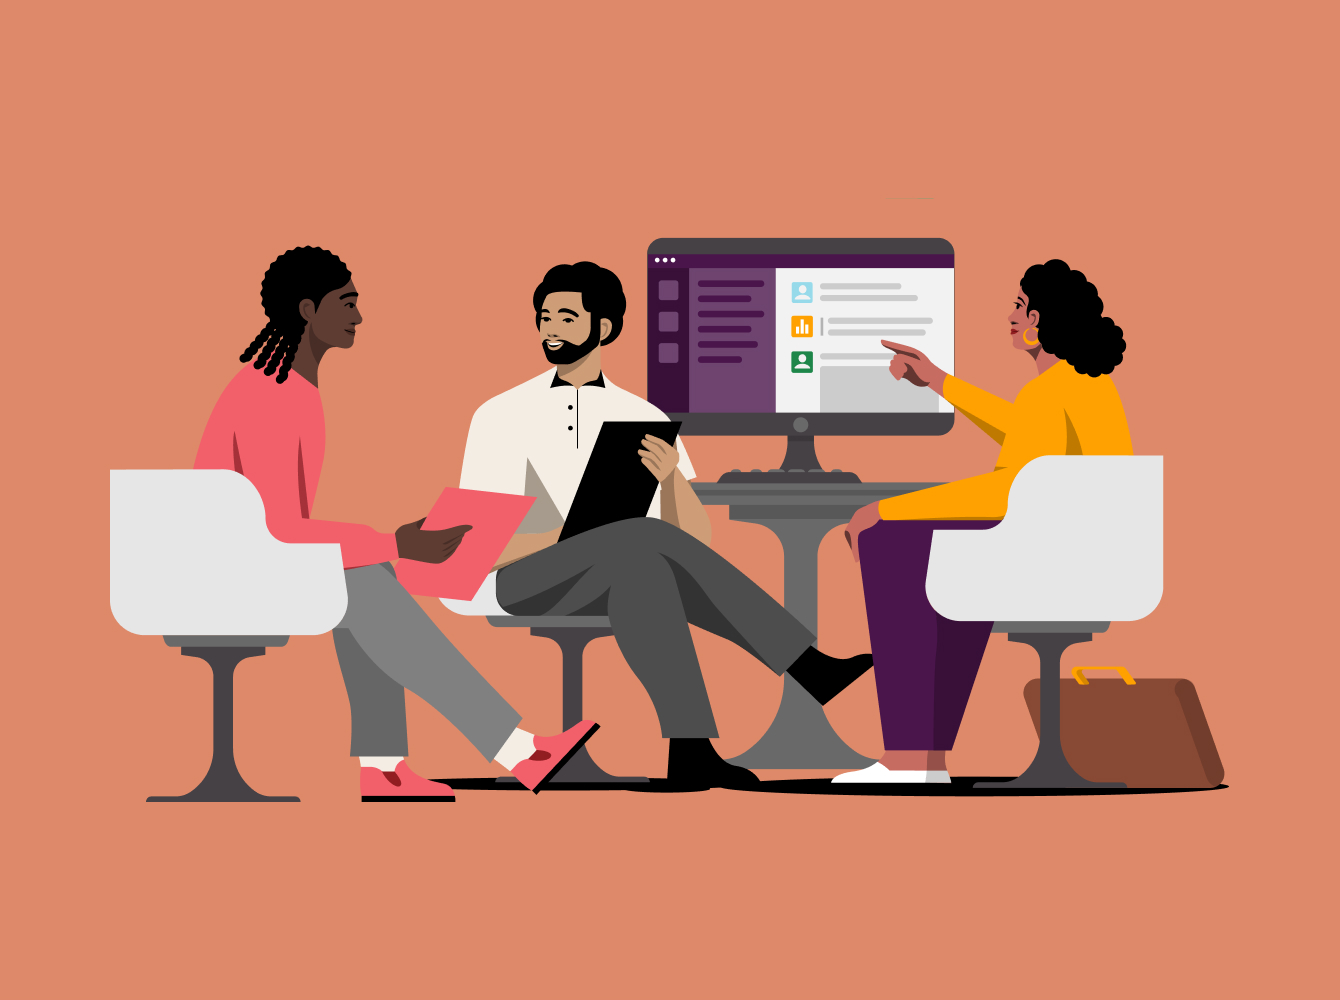 Bild von drei Personen, die an einem Schreibtisch zusammenarbeiten, mit Slack auf einem Monitor im Hintergrund